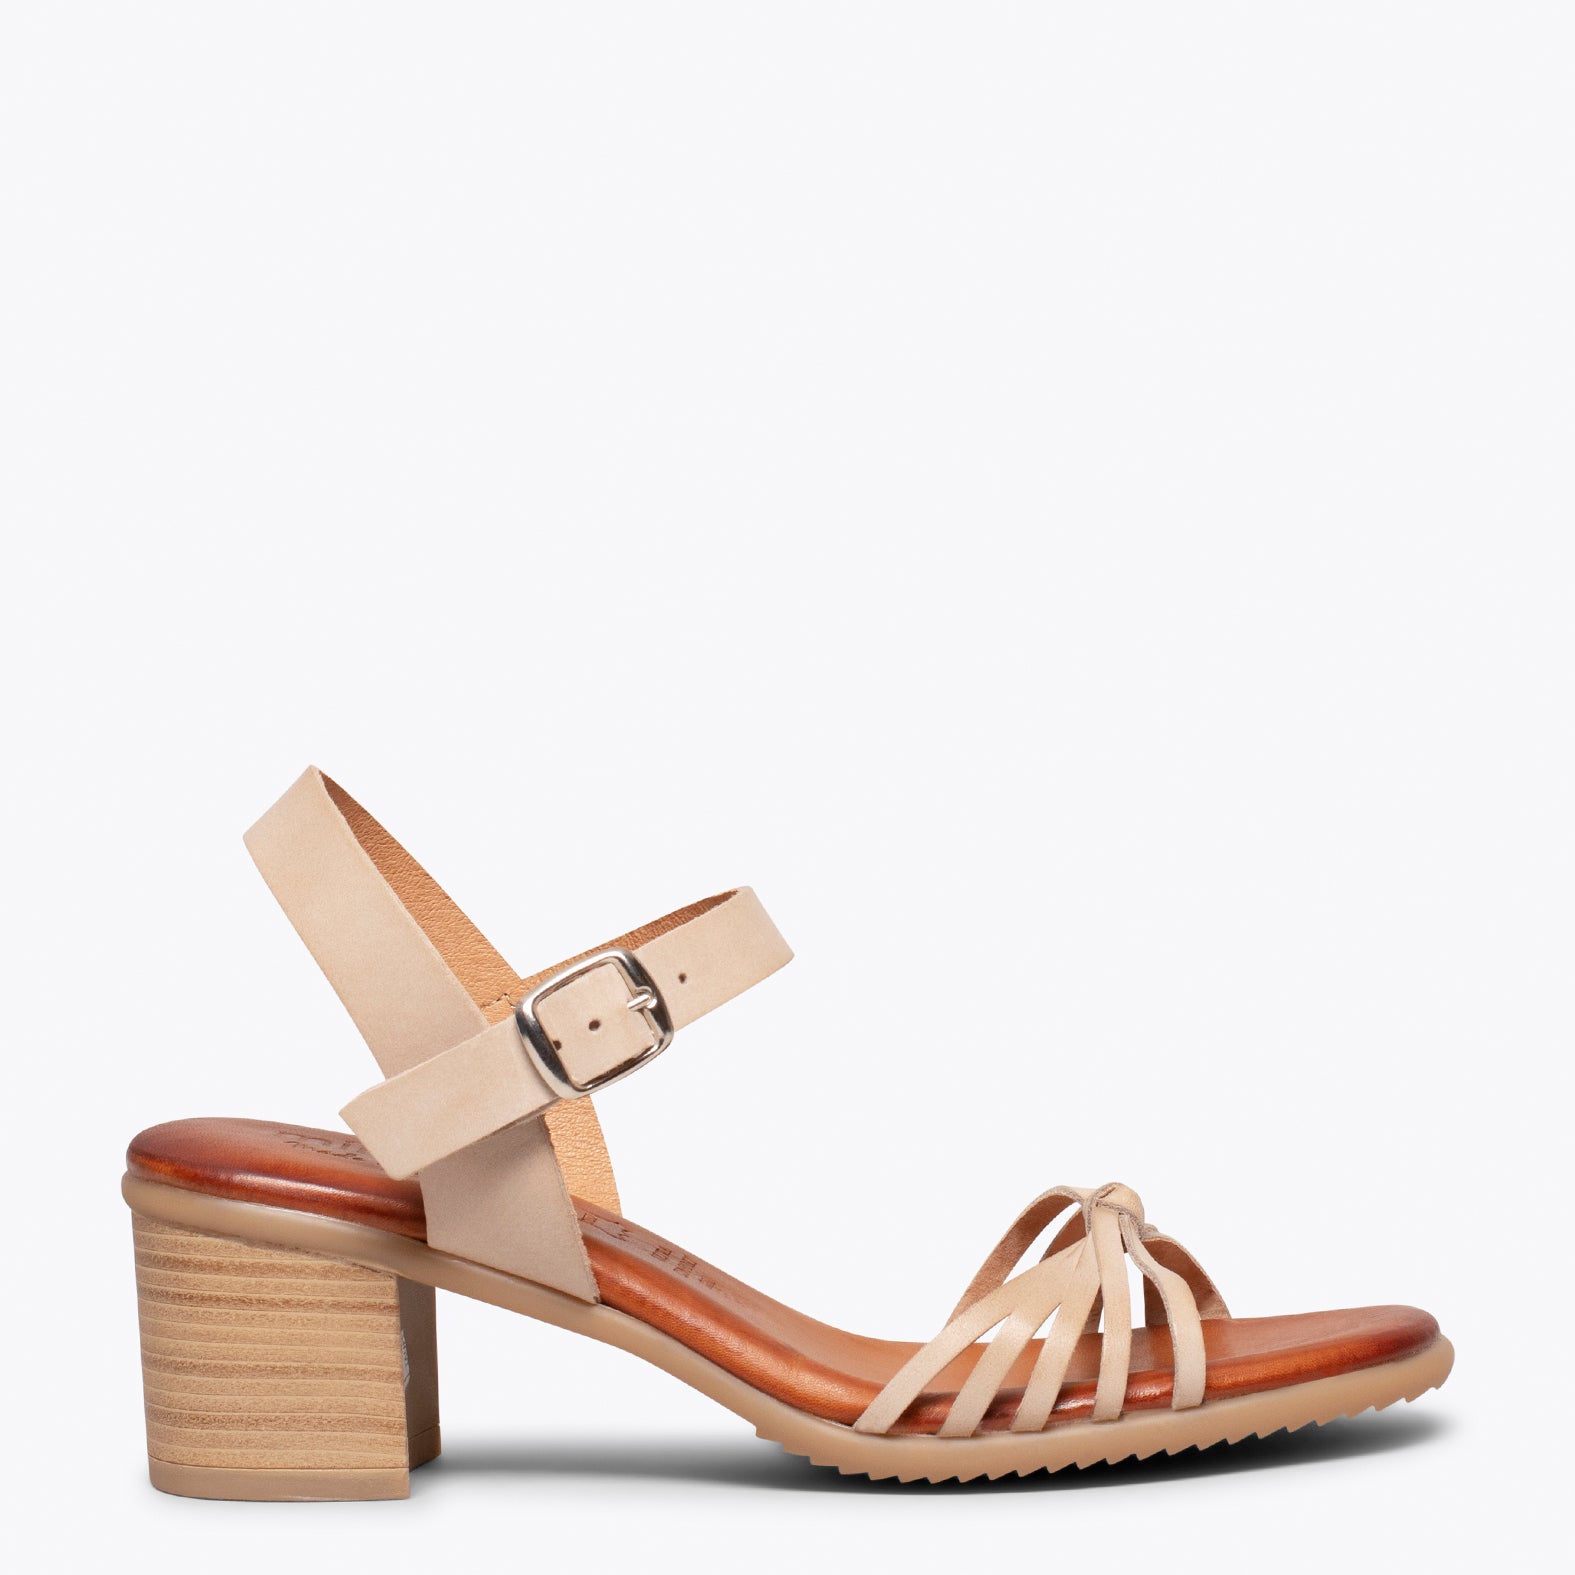 LOTO – BEIGE sandals with comfortable block heel